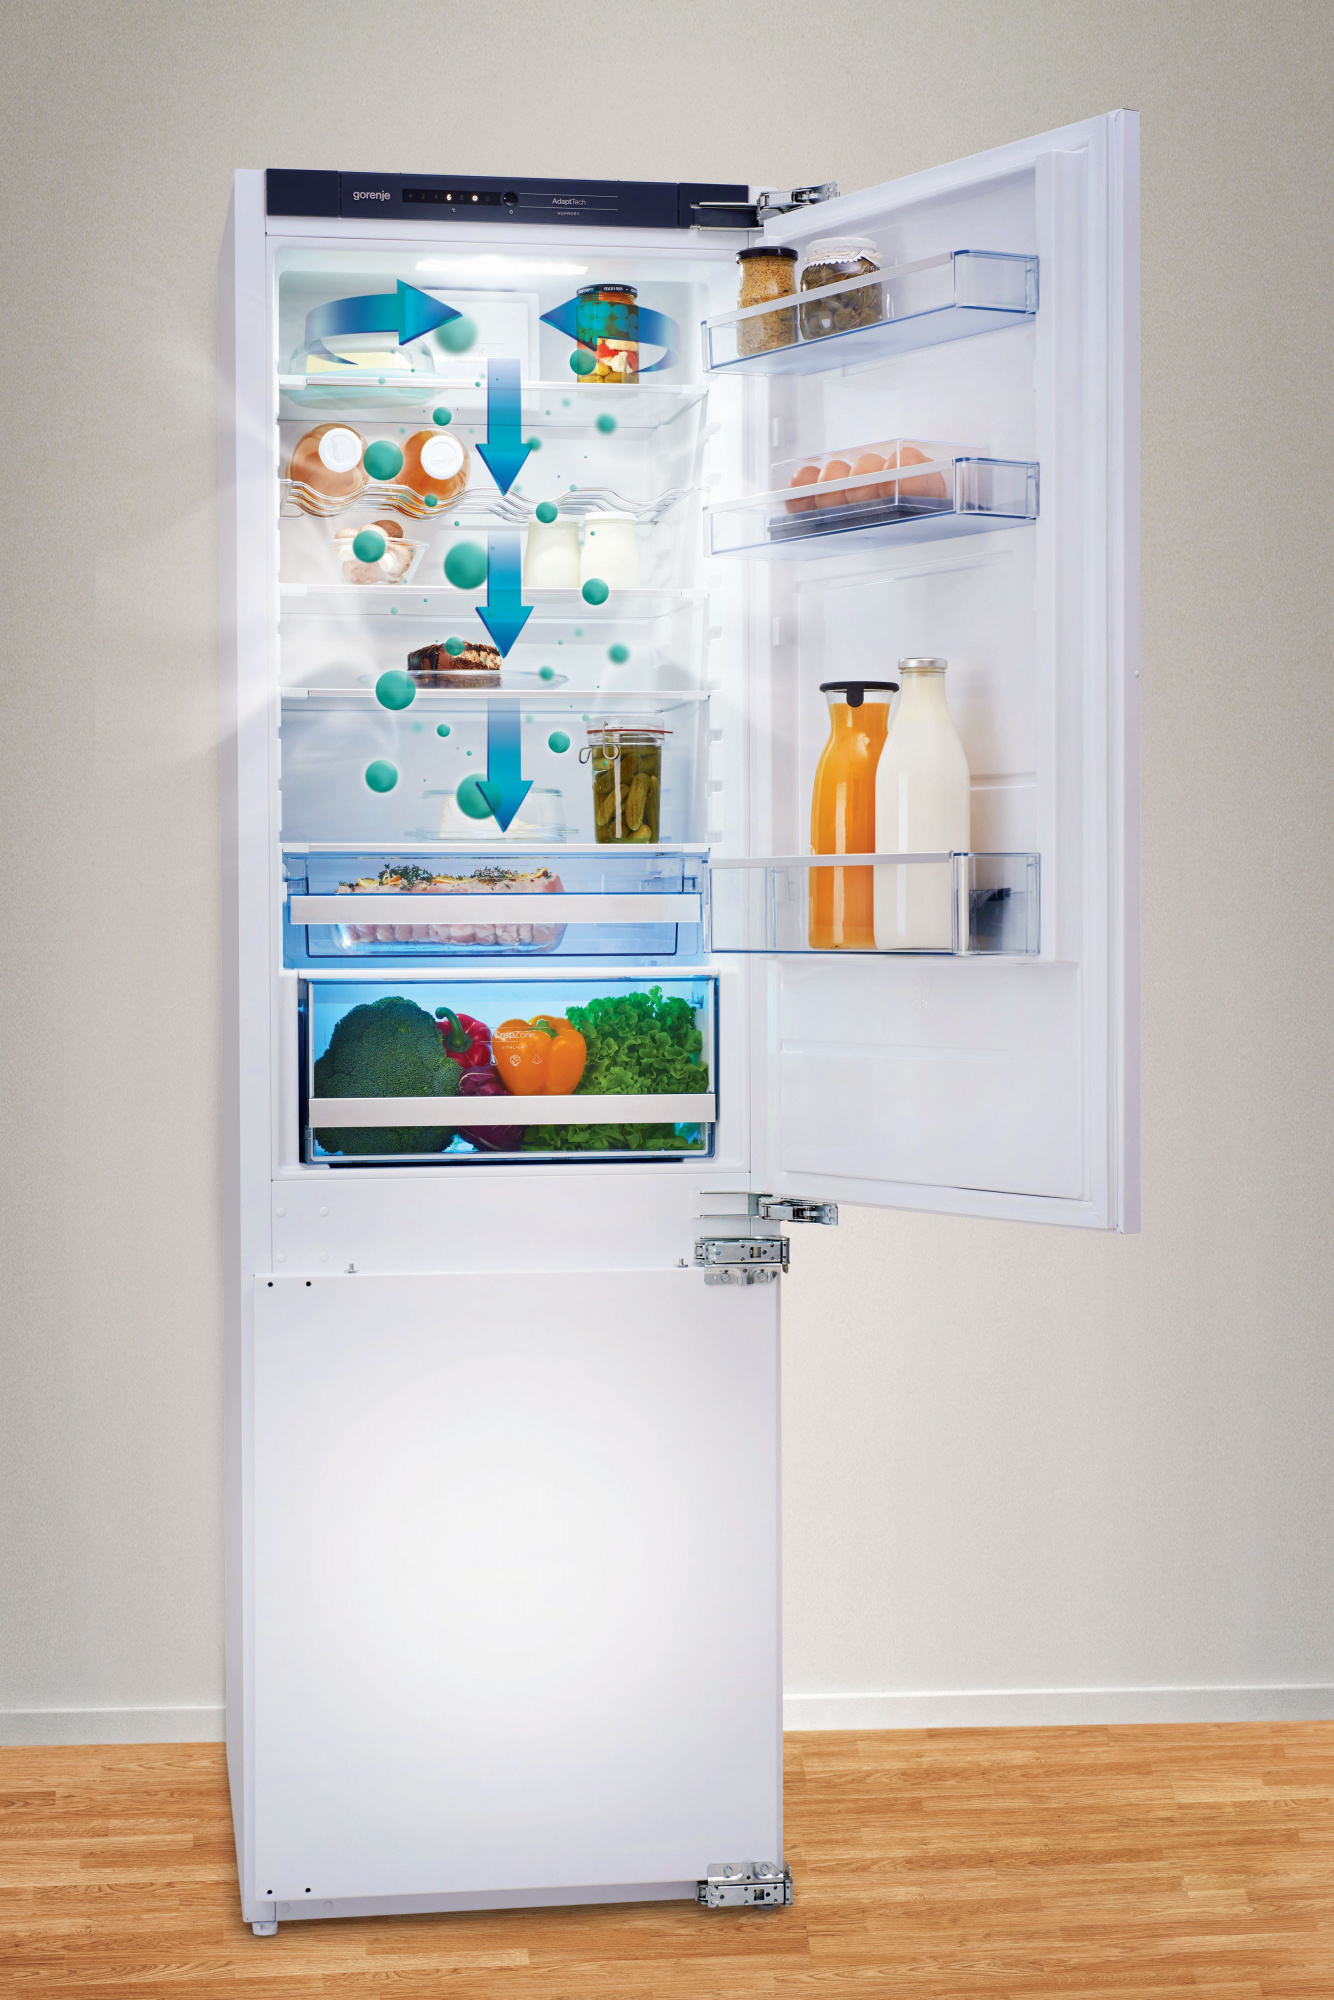 Холодильник встраиваемый двухкамерный no frost. Встраиваемый холодильник Gorenje nrki4182a1 белый. Встраиваемый холодильник Gorenje nrki4182p1. Встраиваемый холодильник Gorenje NRKI 2181 a1. Встраиваемый холодильник Gorenje ri4182e1.